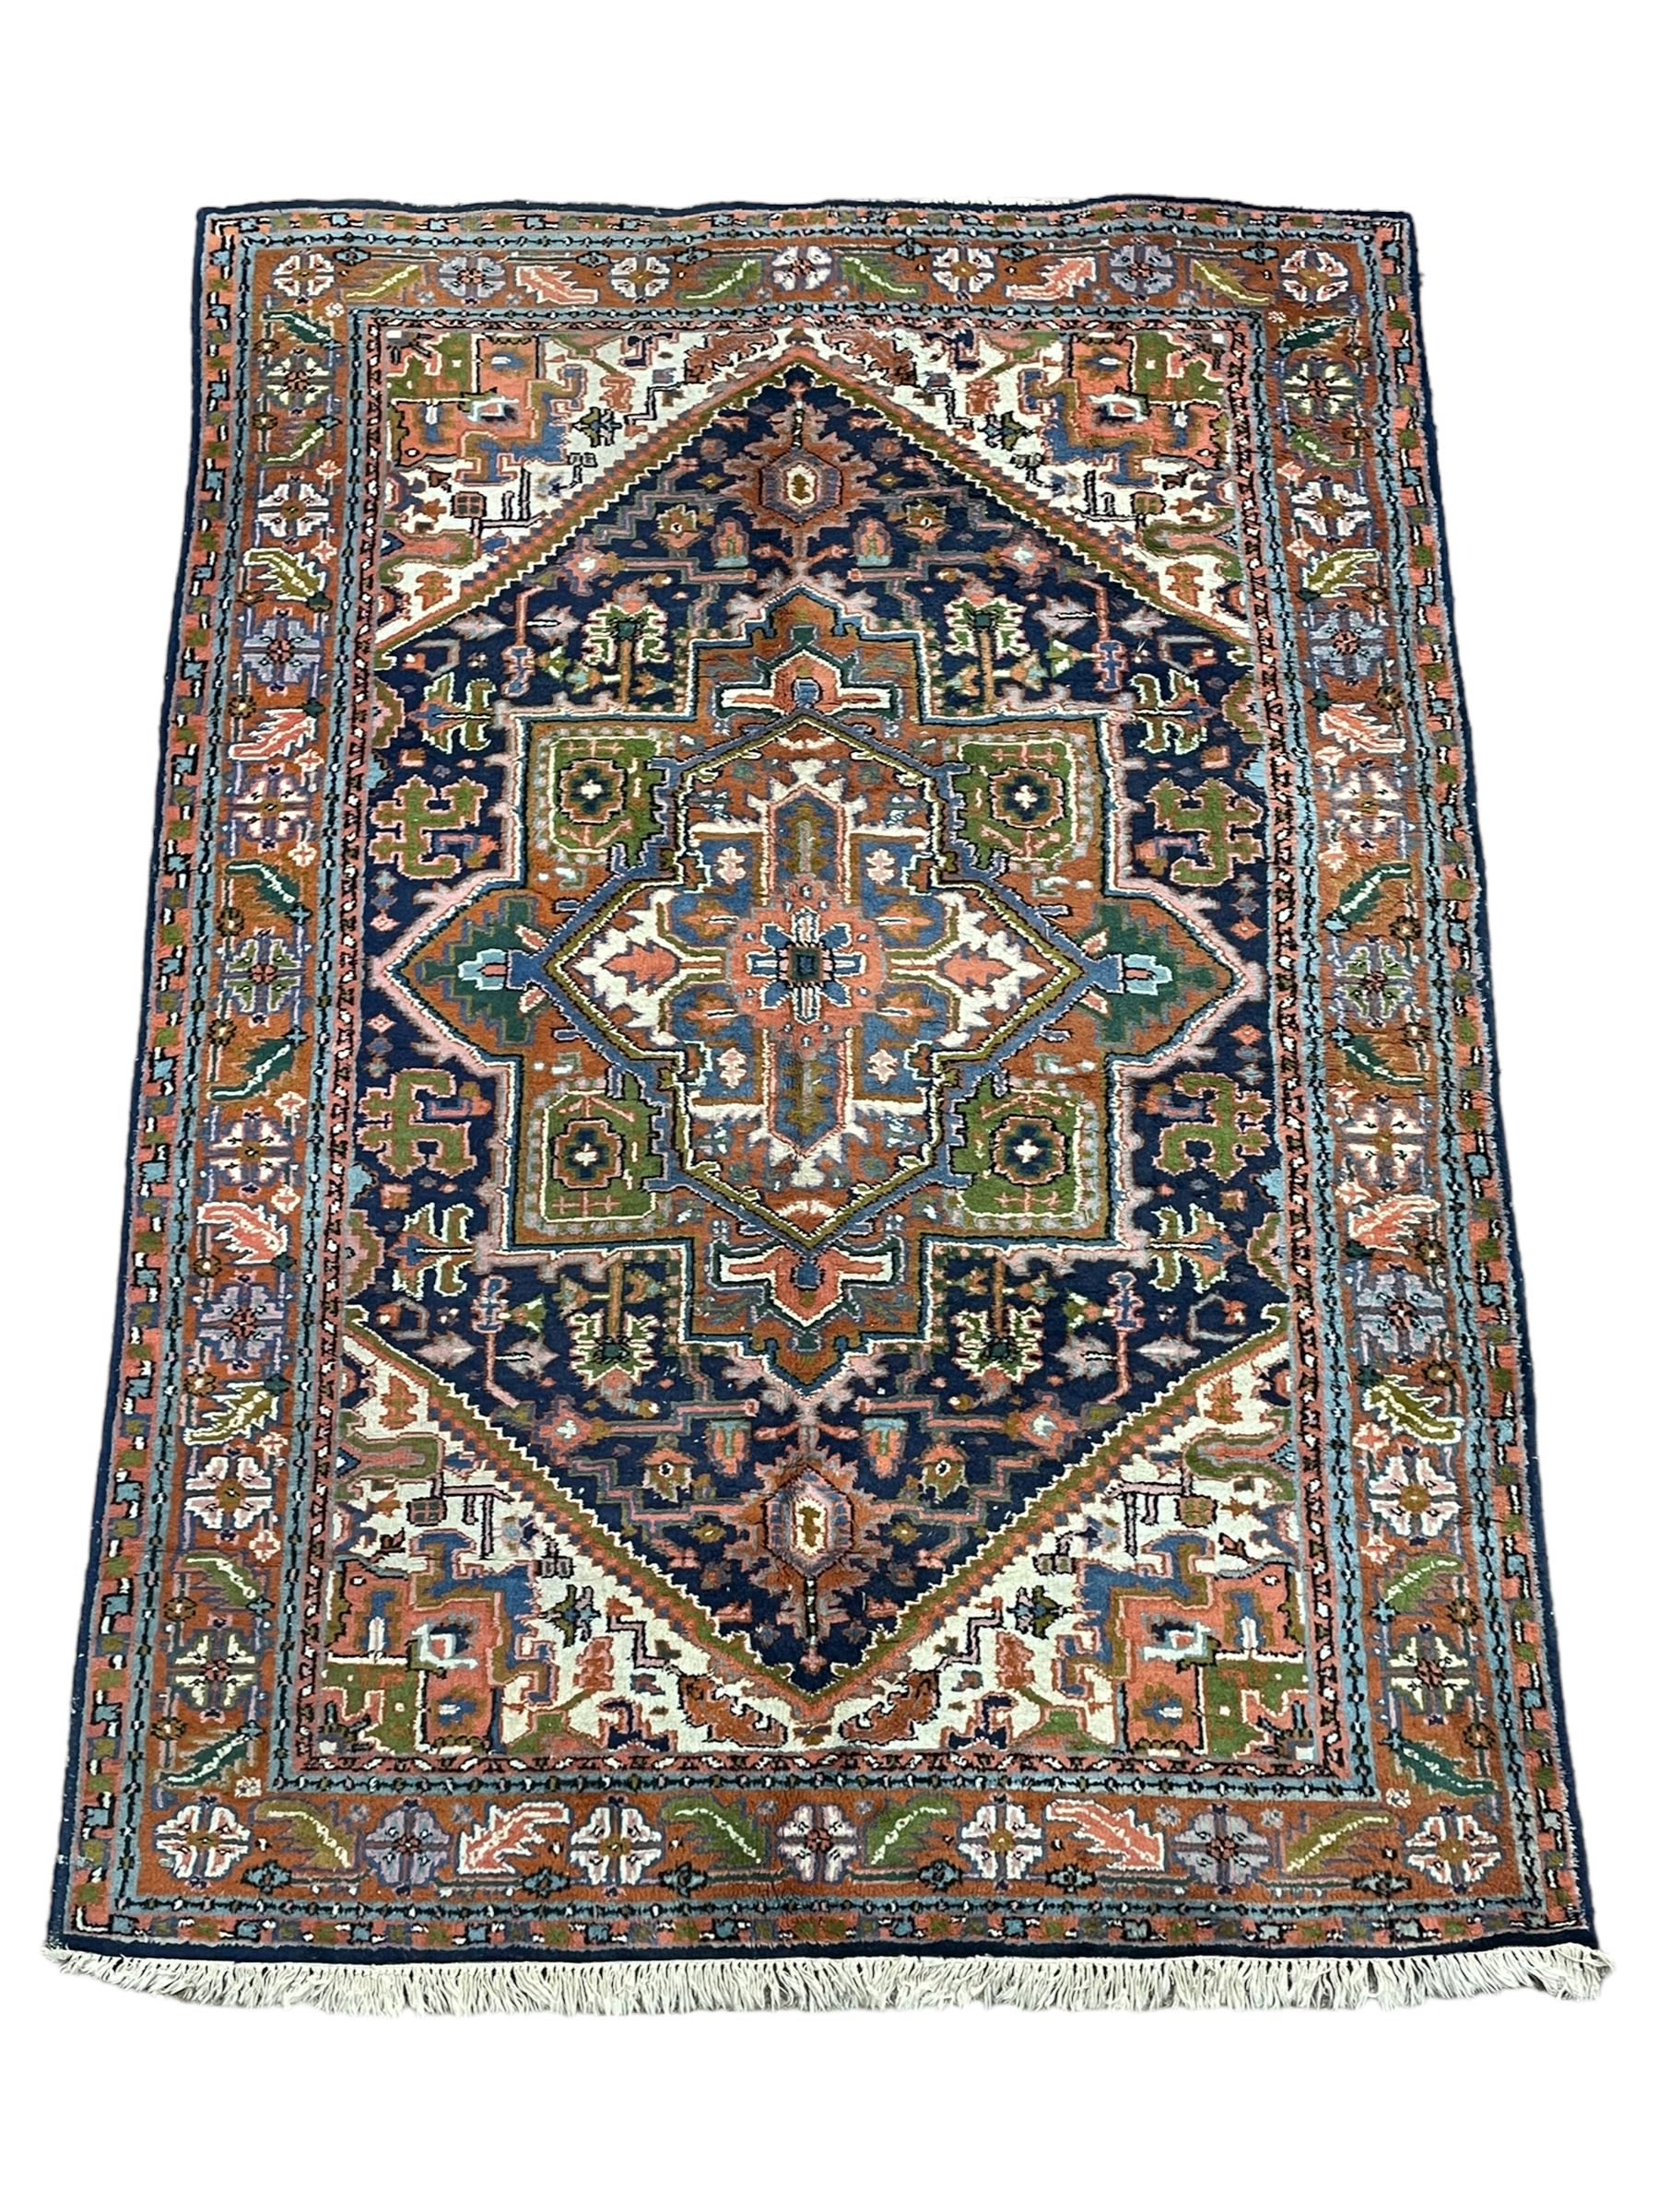 Persian Heriz indigo and rust ground rug